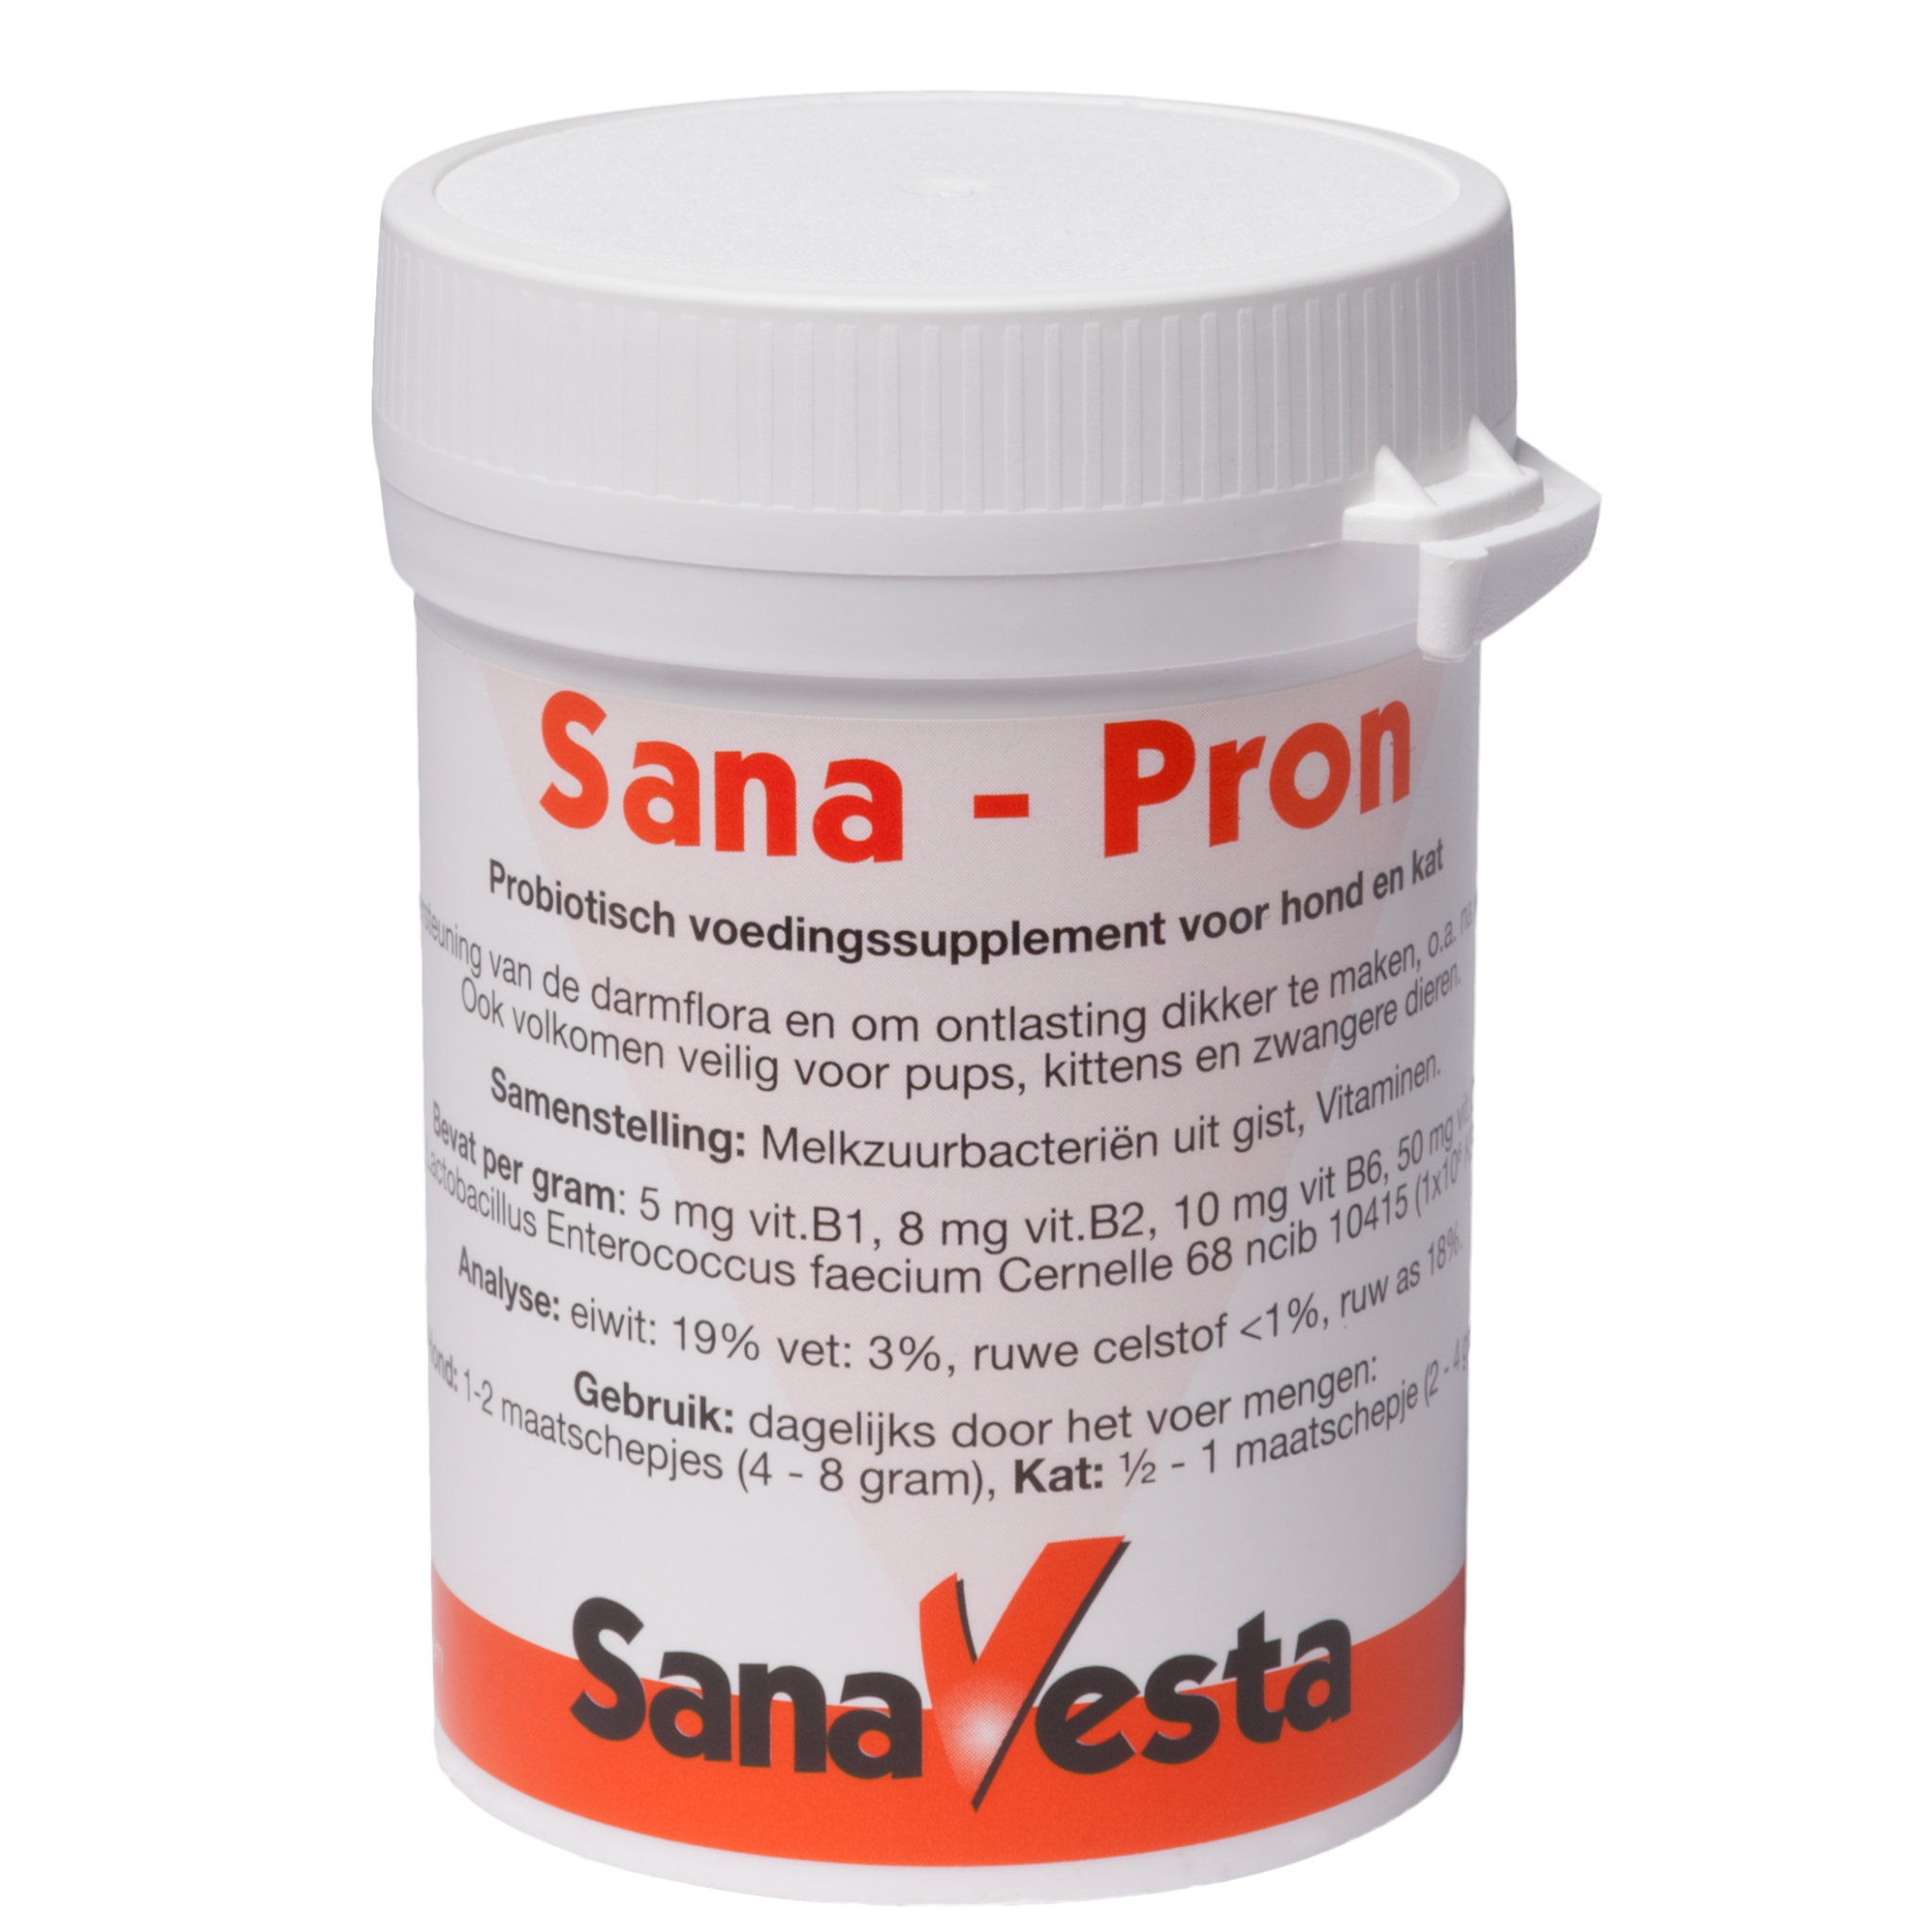 Probiotica voor hond en kat - Sana-Pron